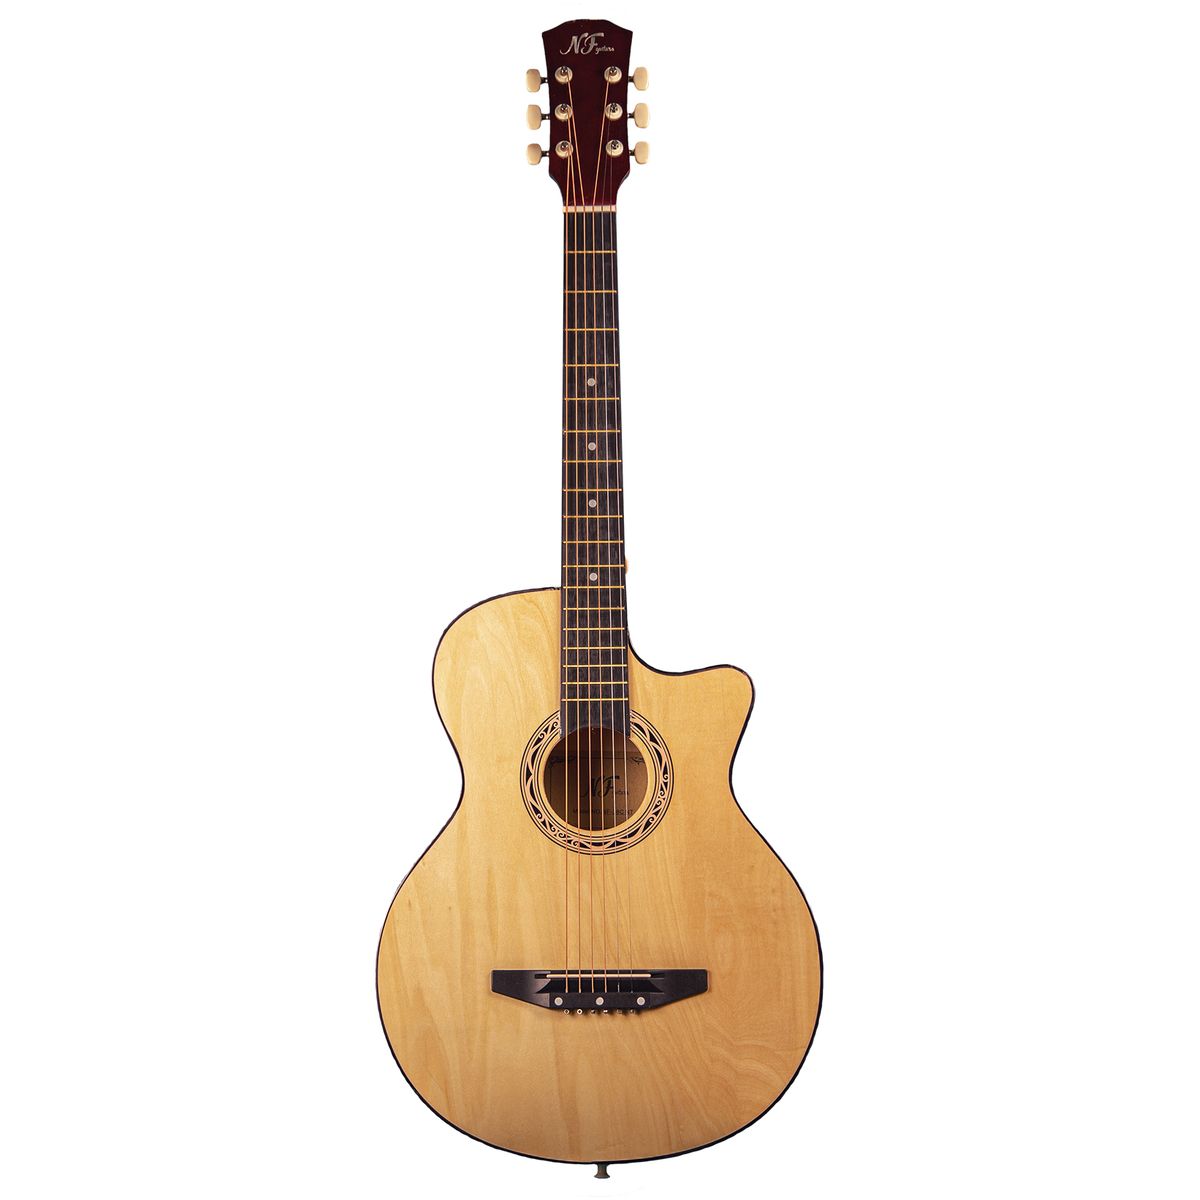 Акустические гитары NF Guitars NF-38C NT акустическая гитара в вырезе 38 дюймовая фолк гитара